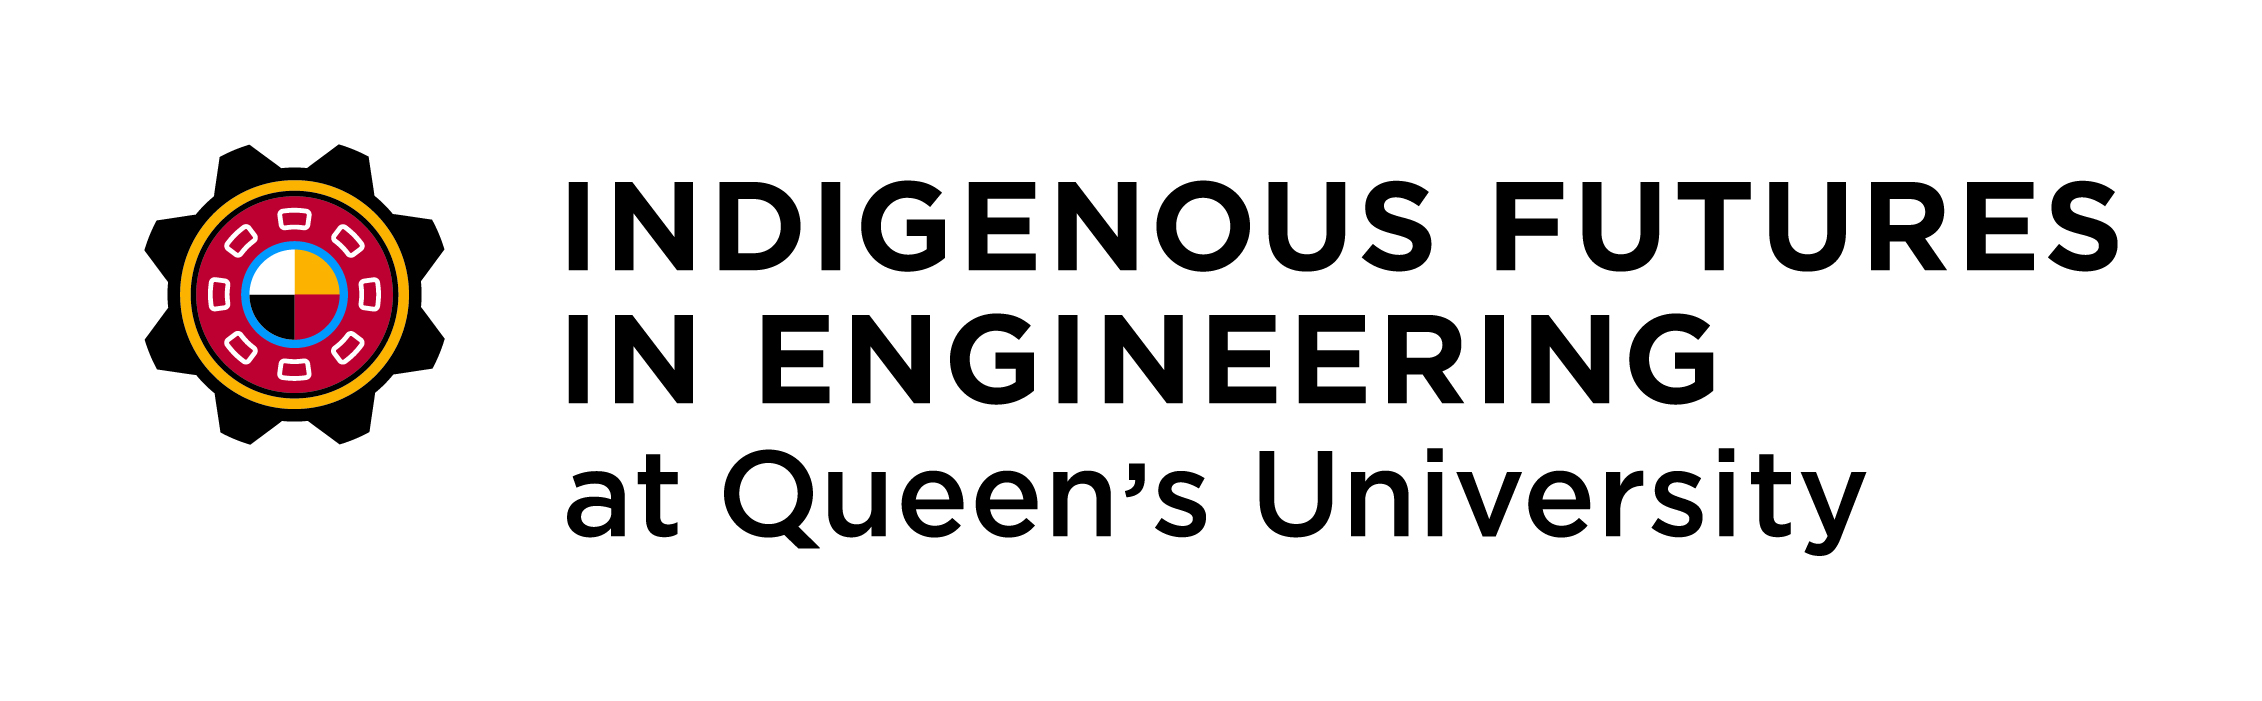 Queen’s University Indigenous Futures in Engineering